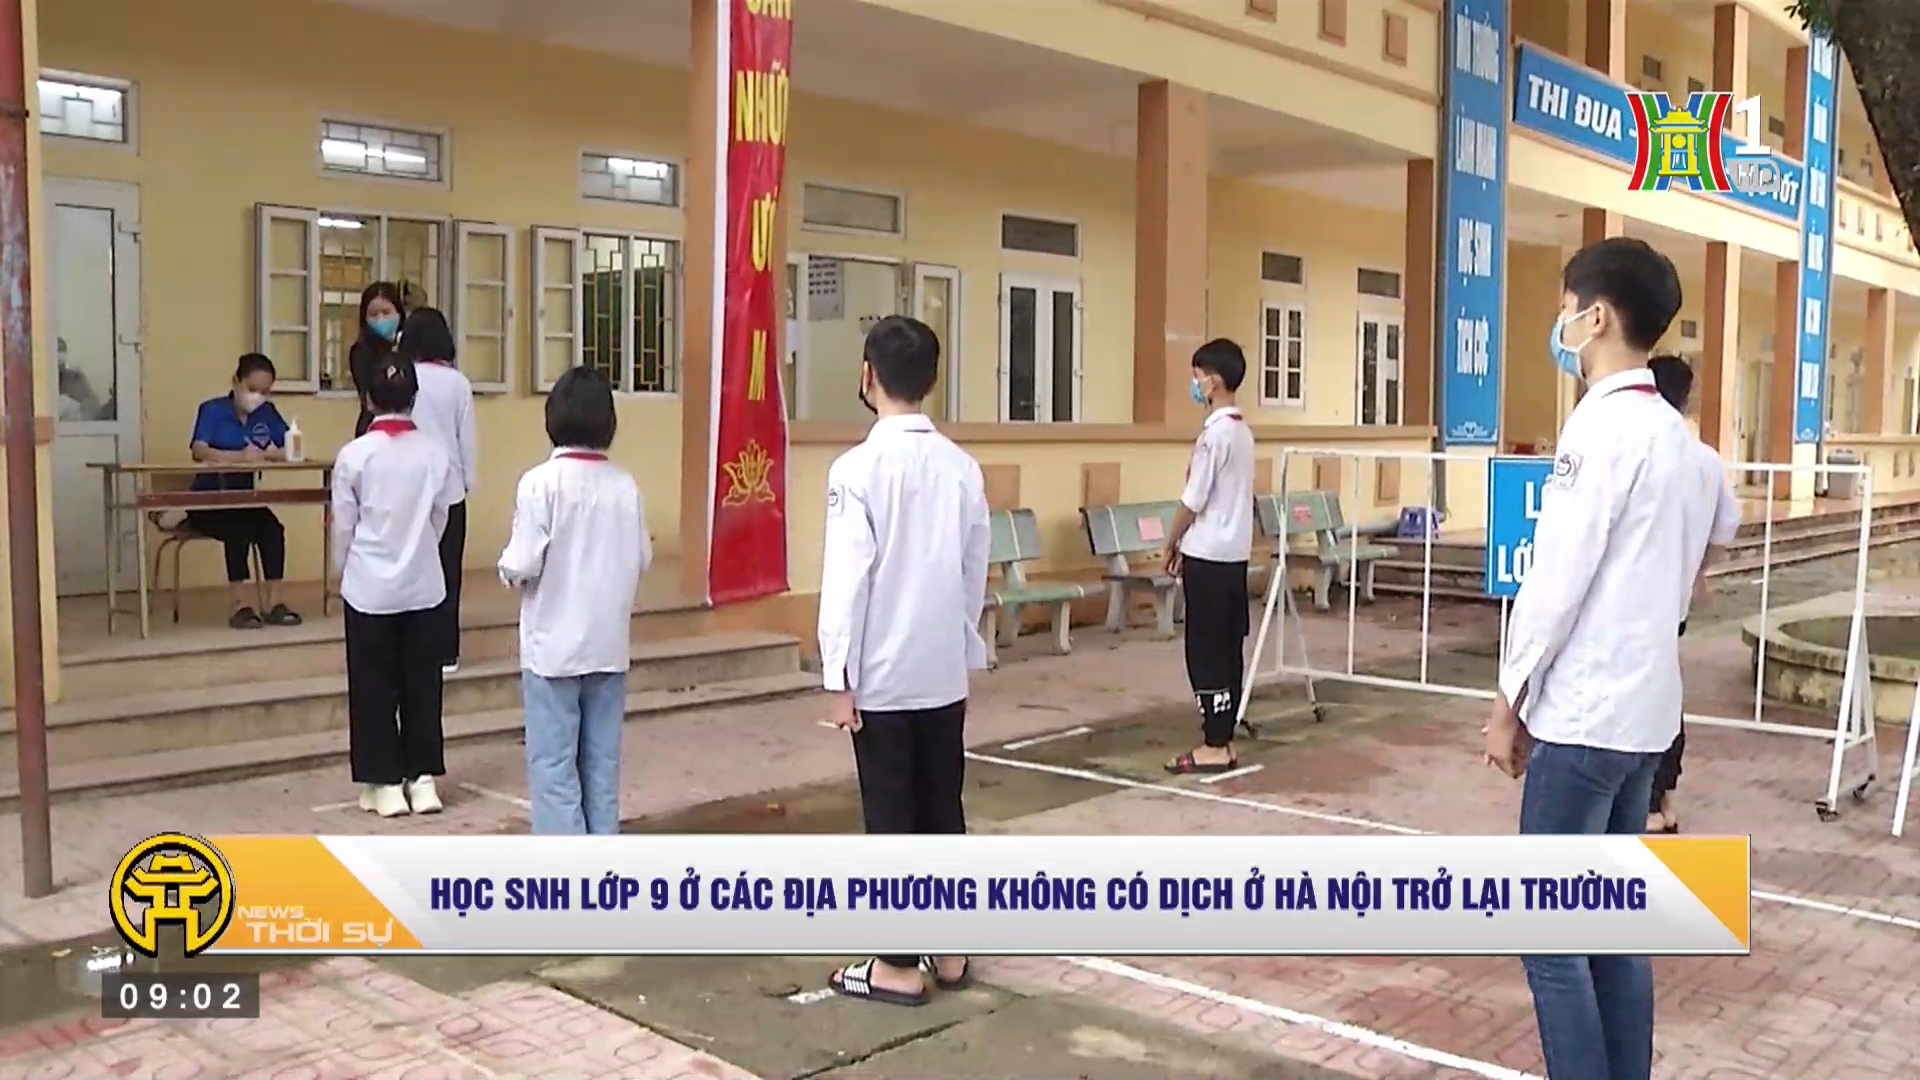 Học sinh lớp 9 ở các địa phương không có dịch ở Hà Nội trở lại trường